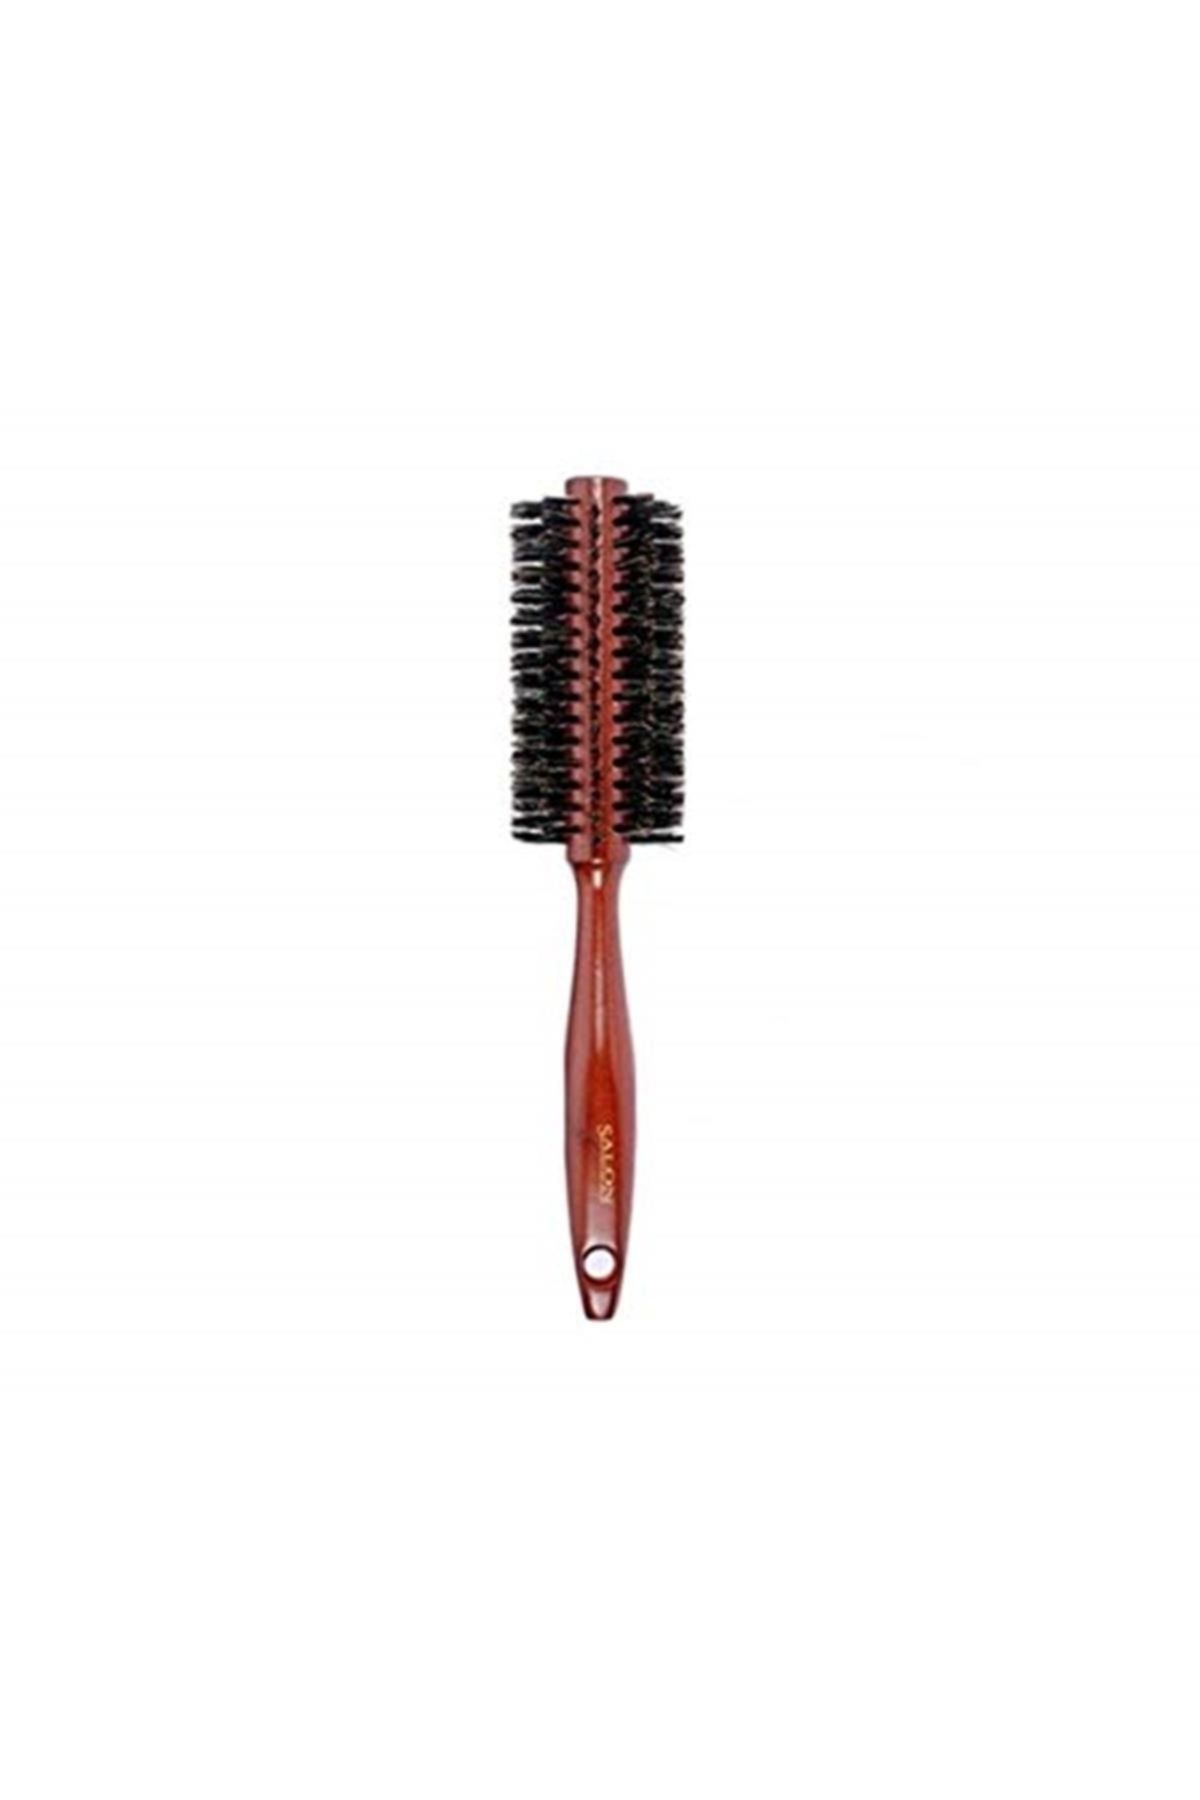 Tarko Marka: Salon Profesyonel Ahşap Saplı Yuvarlak Saç Fırçası 2278 Kategori: Saç Fırçası Ve Tara